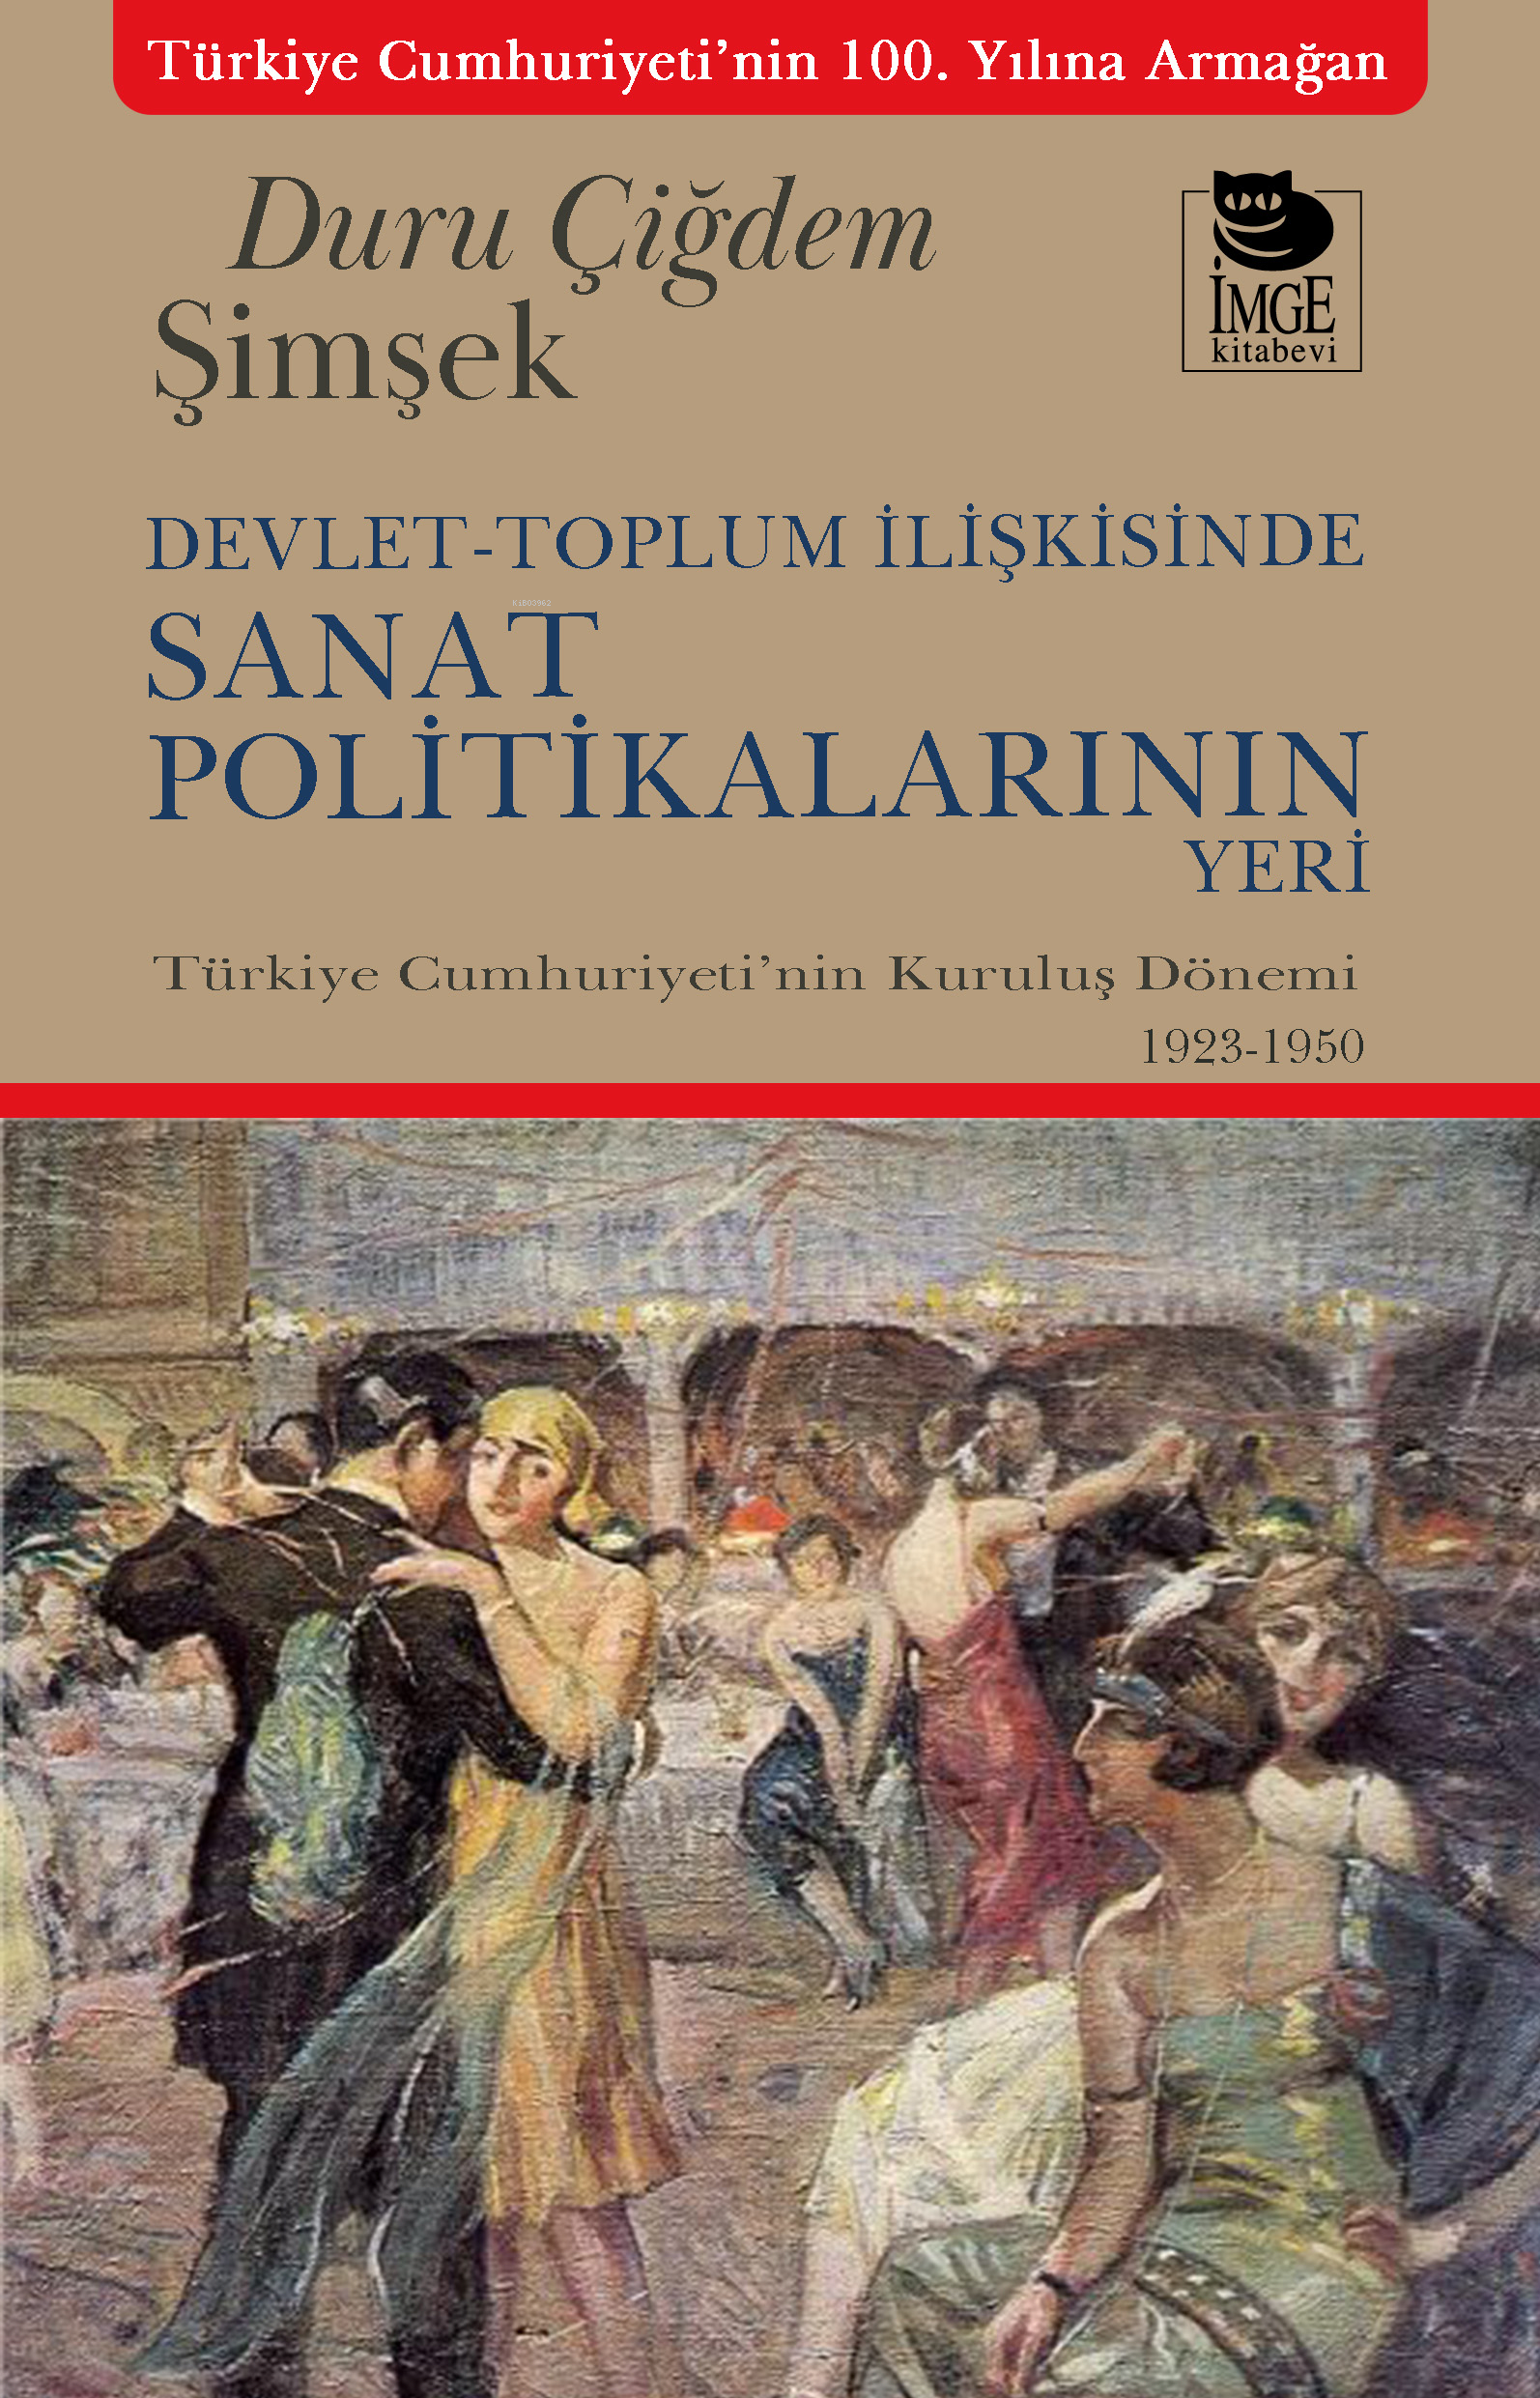 Devlet-Toplum İlişkisinde Sanat Politikalarının Yeri;Türkiye Cumhuriyeti'nin Kuruluş Dönemi 1923-1950